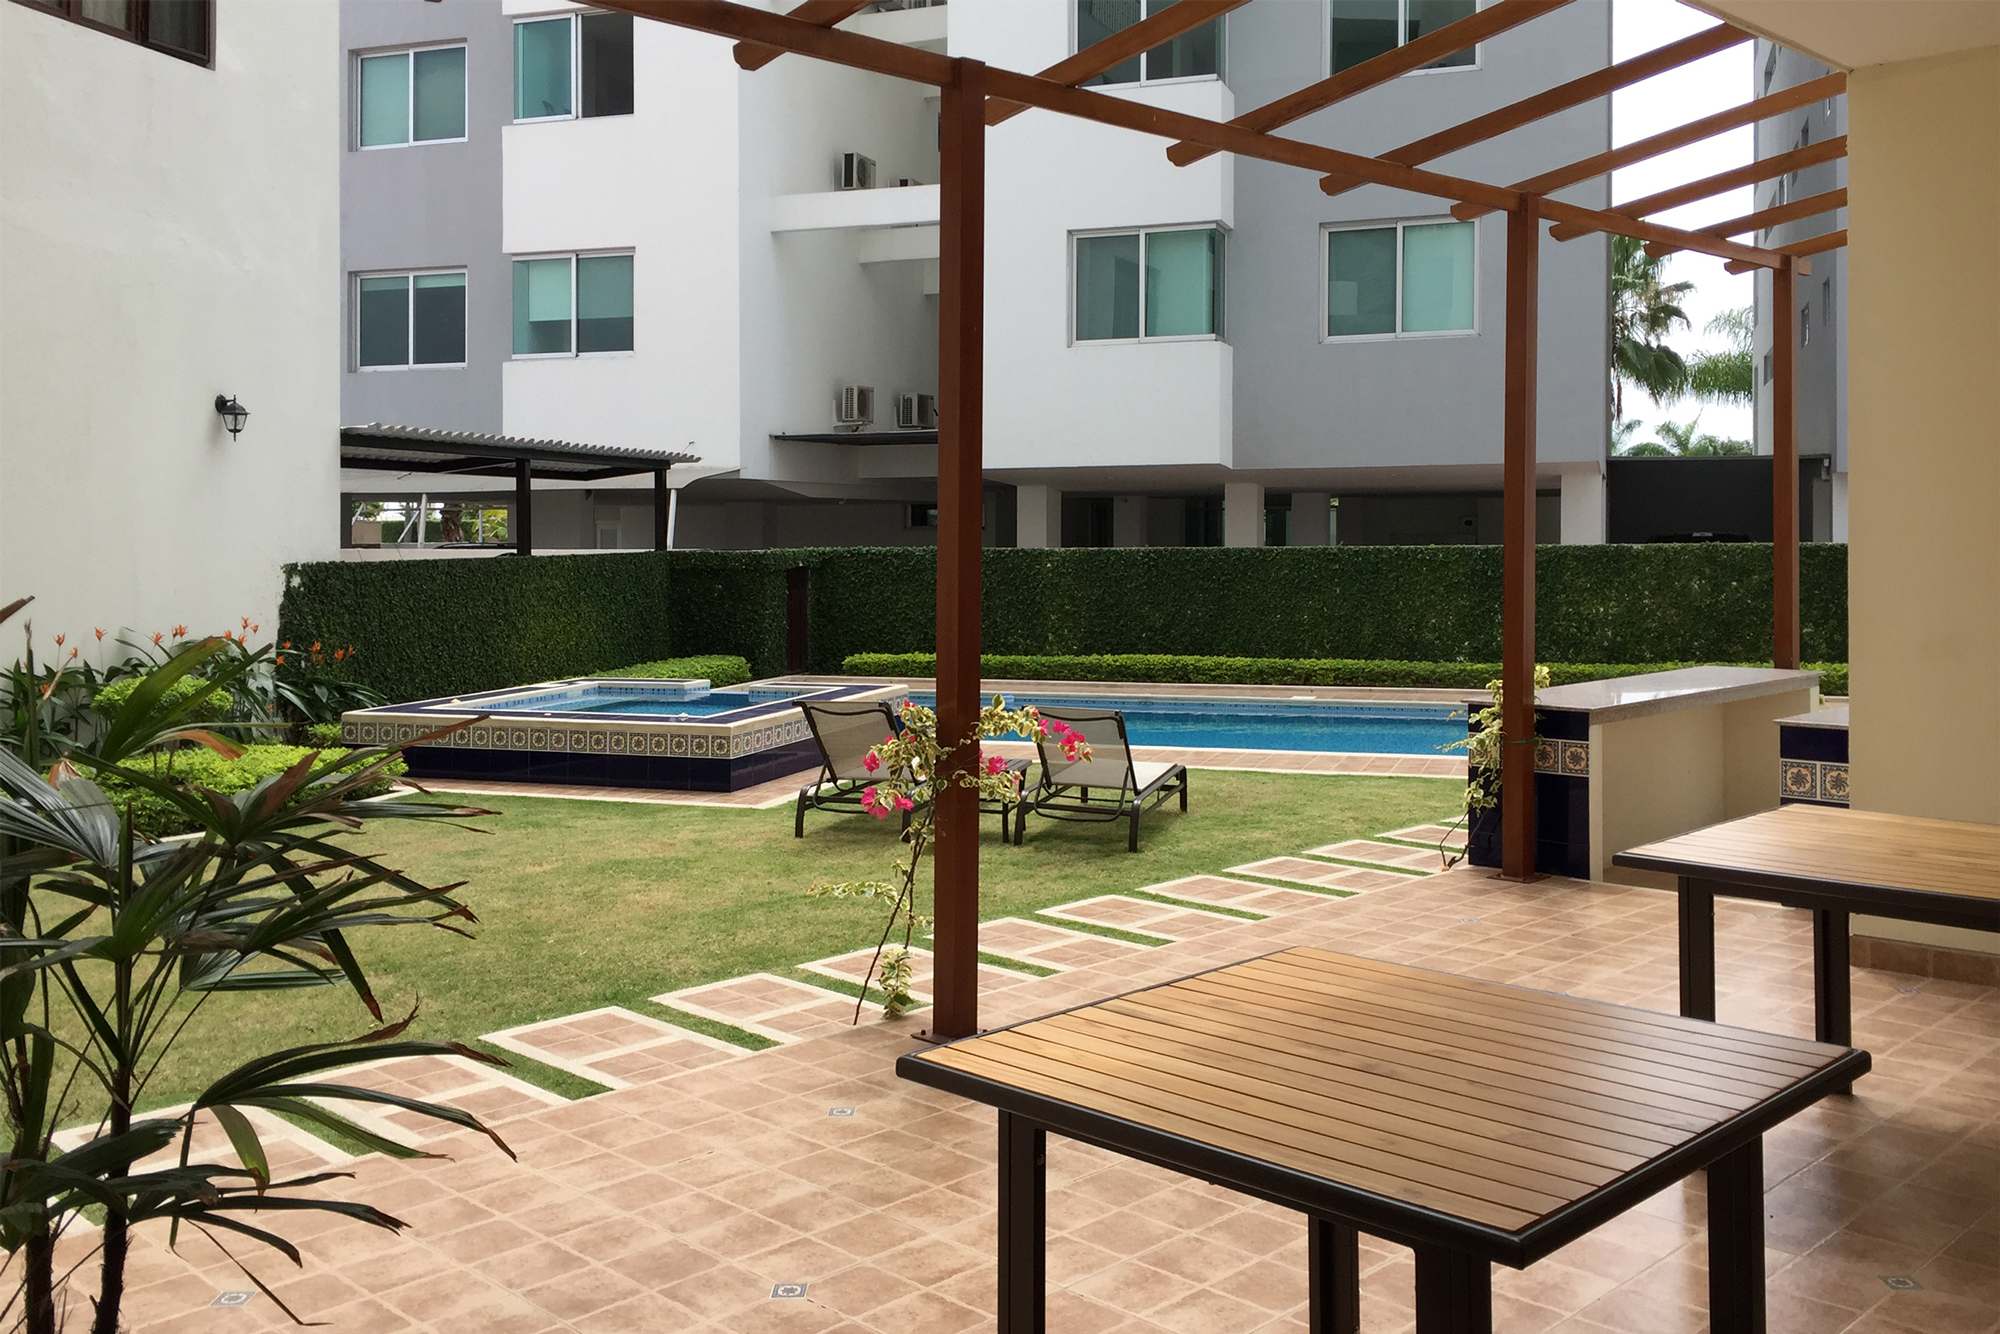 patio con pergola piscina hidromasaje y areas verdes del condominio santa catalina de la constructora marbe